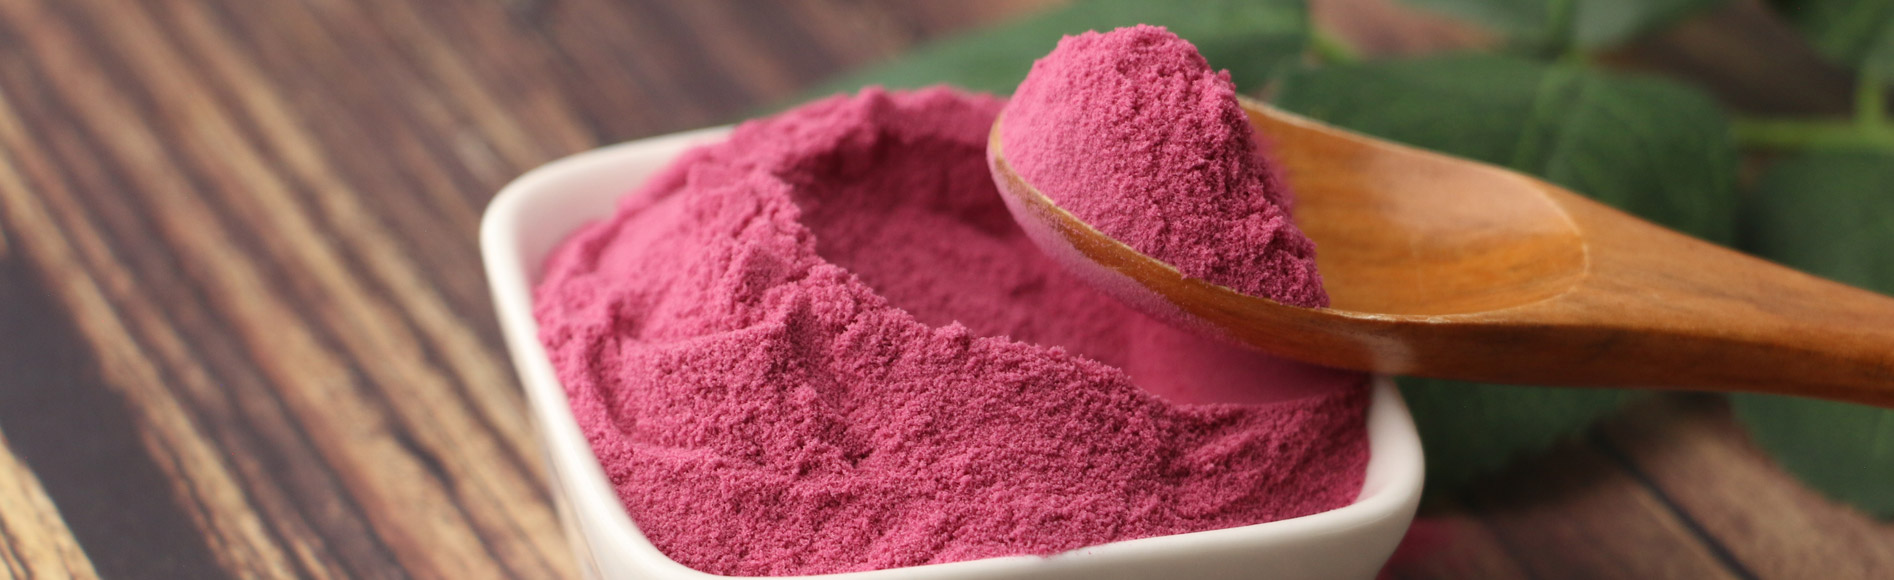 FruiVeg® 弗瑞威格 速溶蓝莓粉 具有原料特有色泽